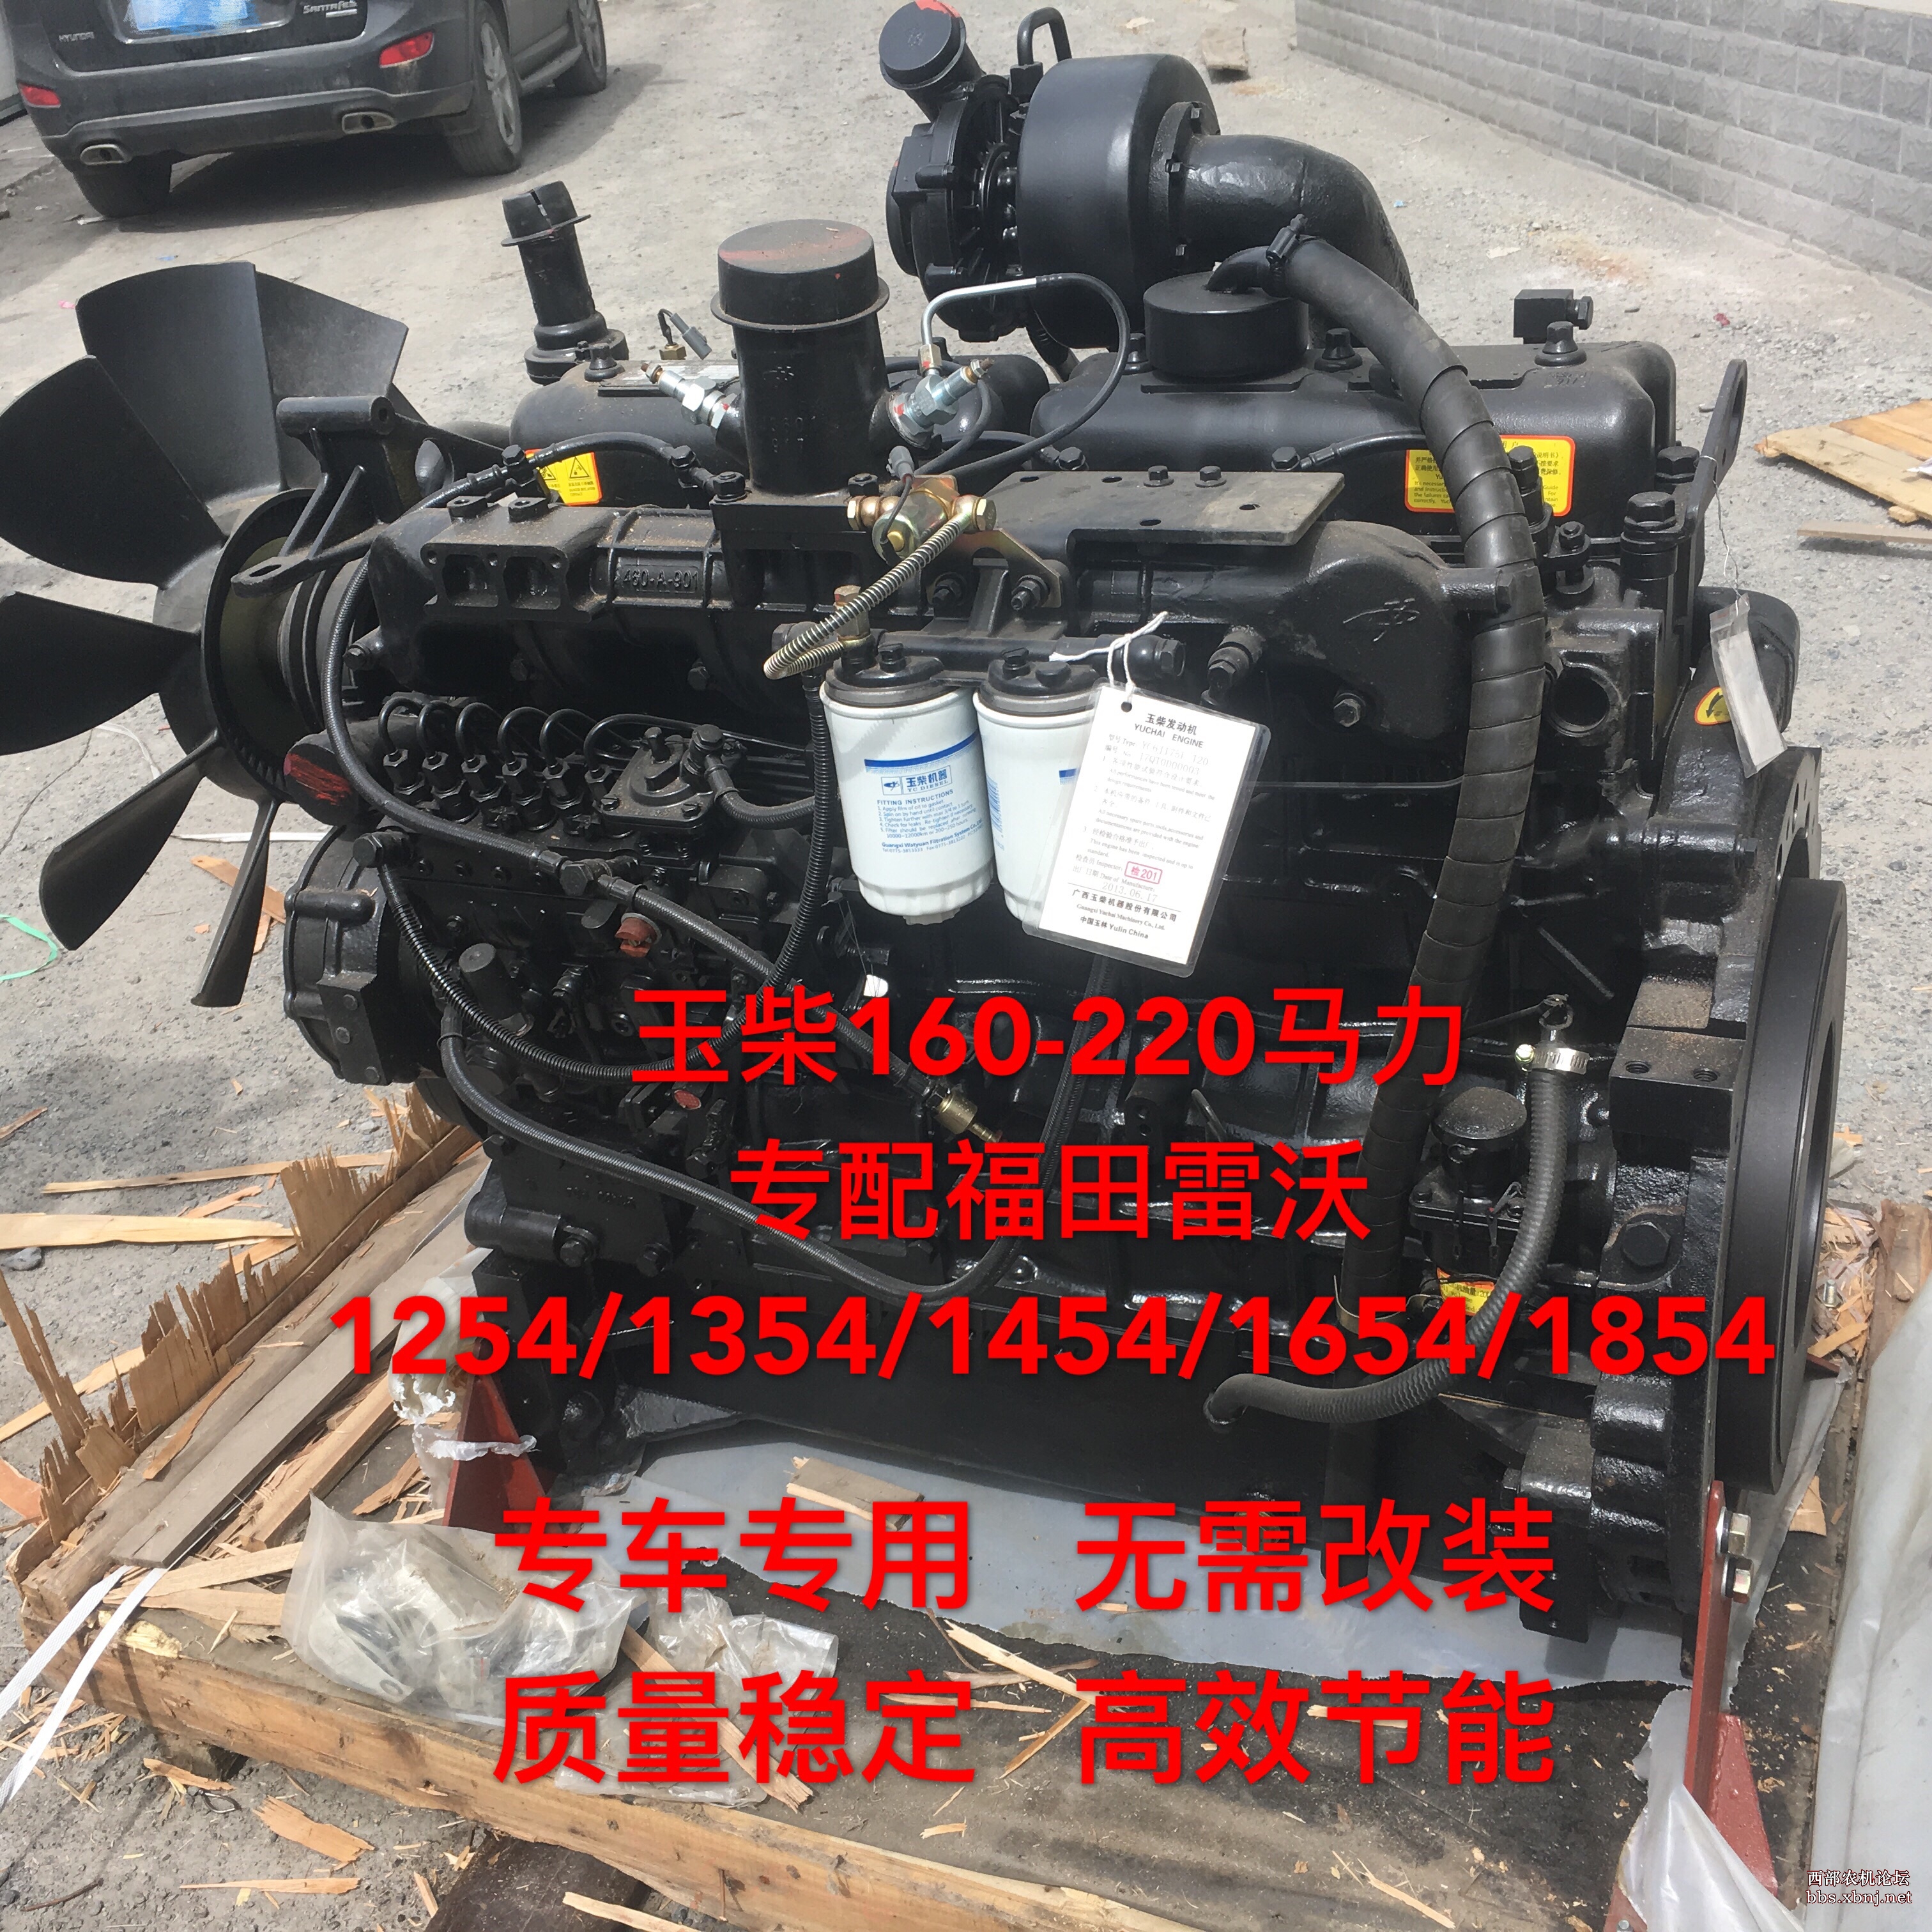 动力机械设备有限公司   公司主营: 东方红yto 60